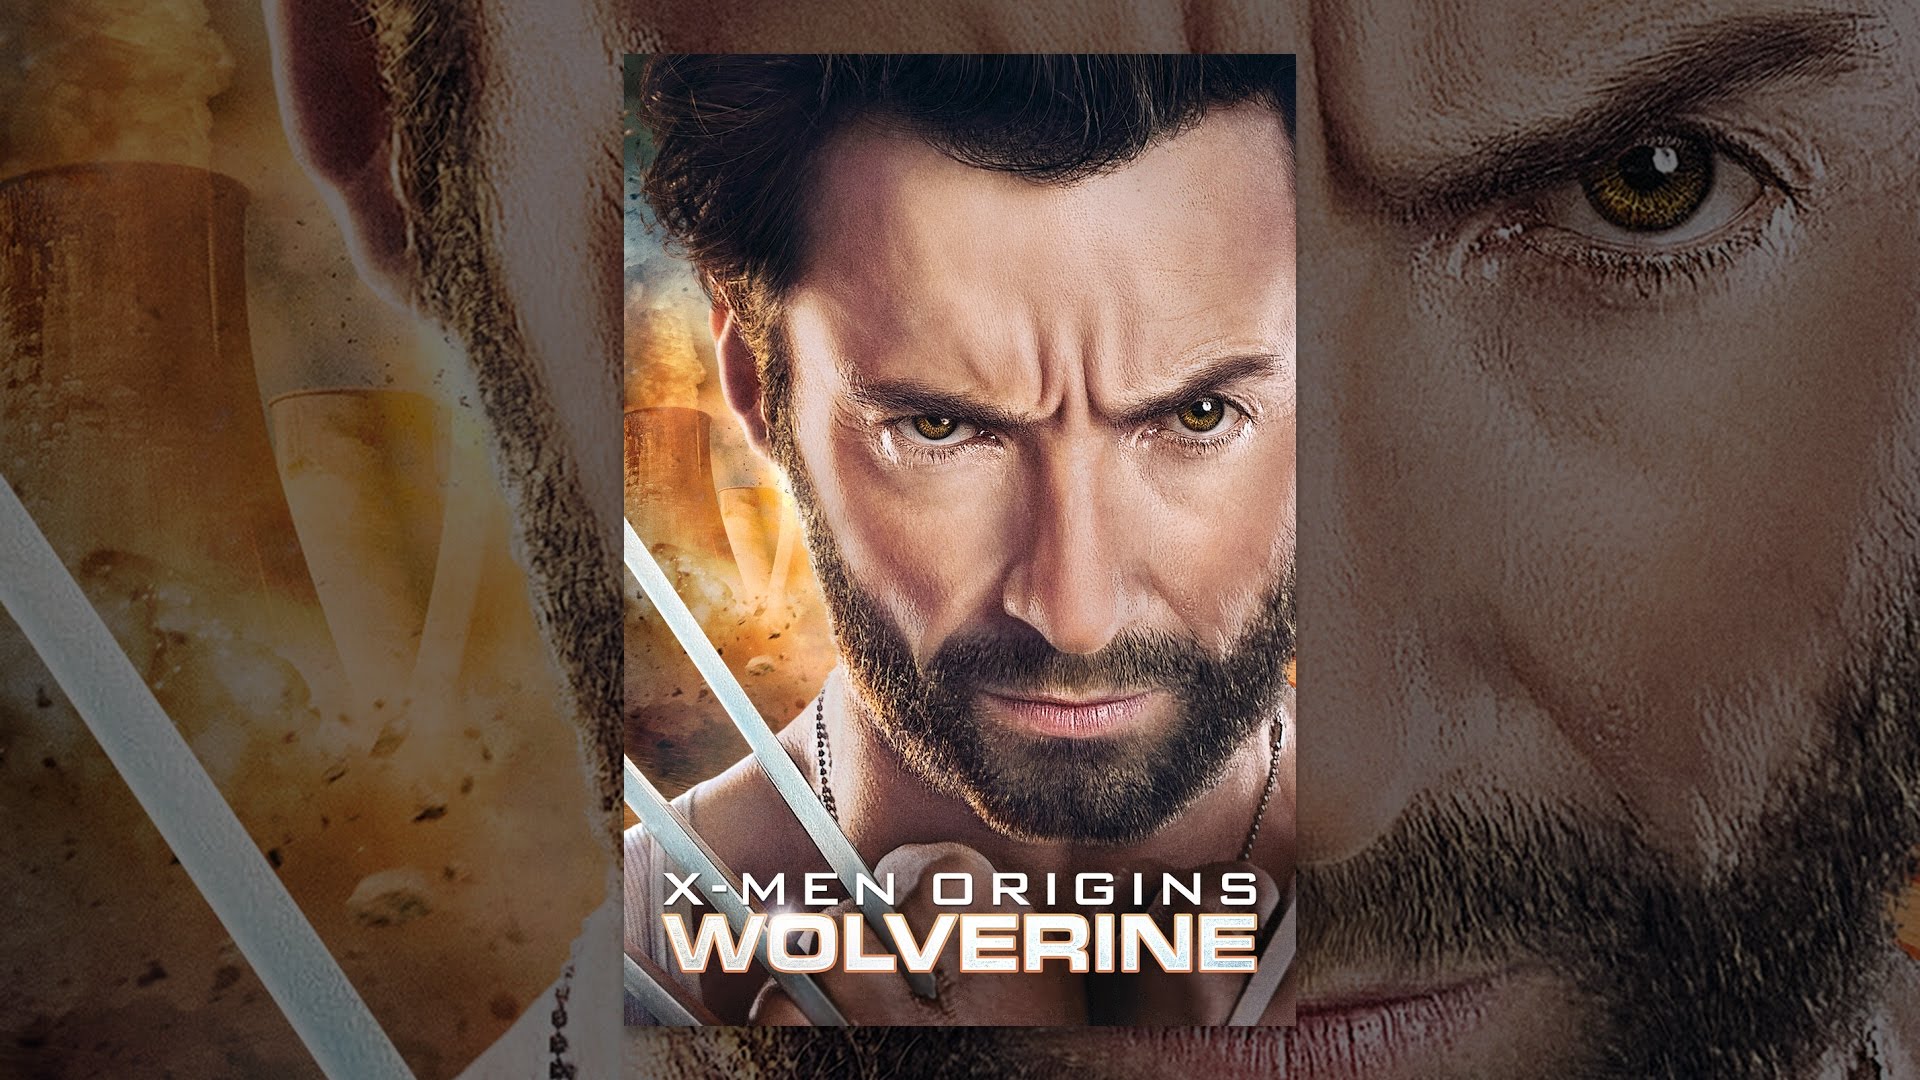 Download X-Men Origins: Wolverine